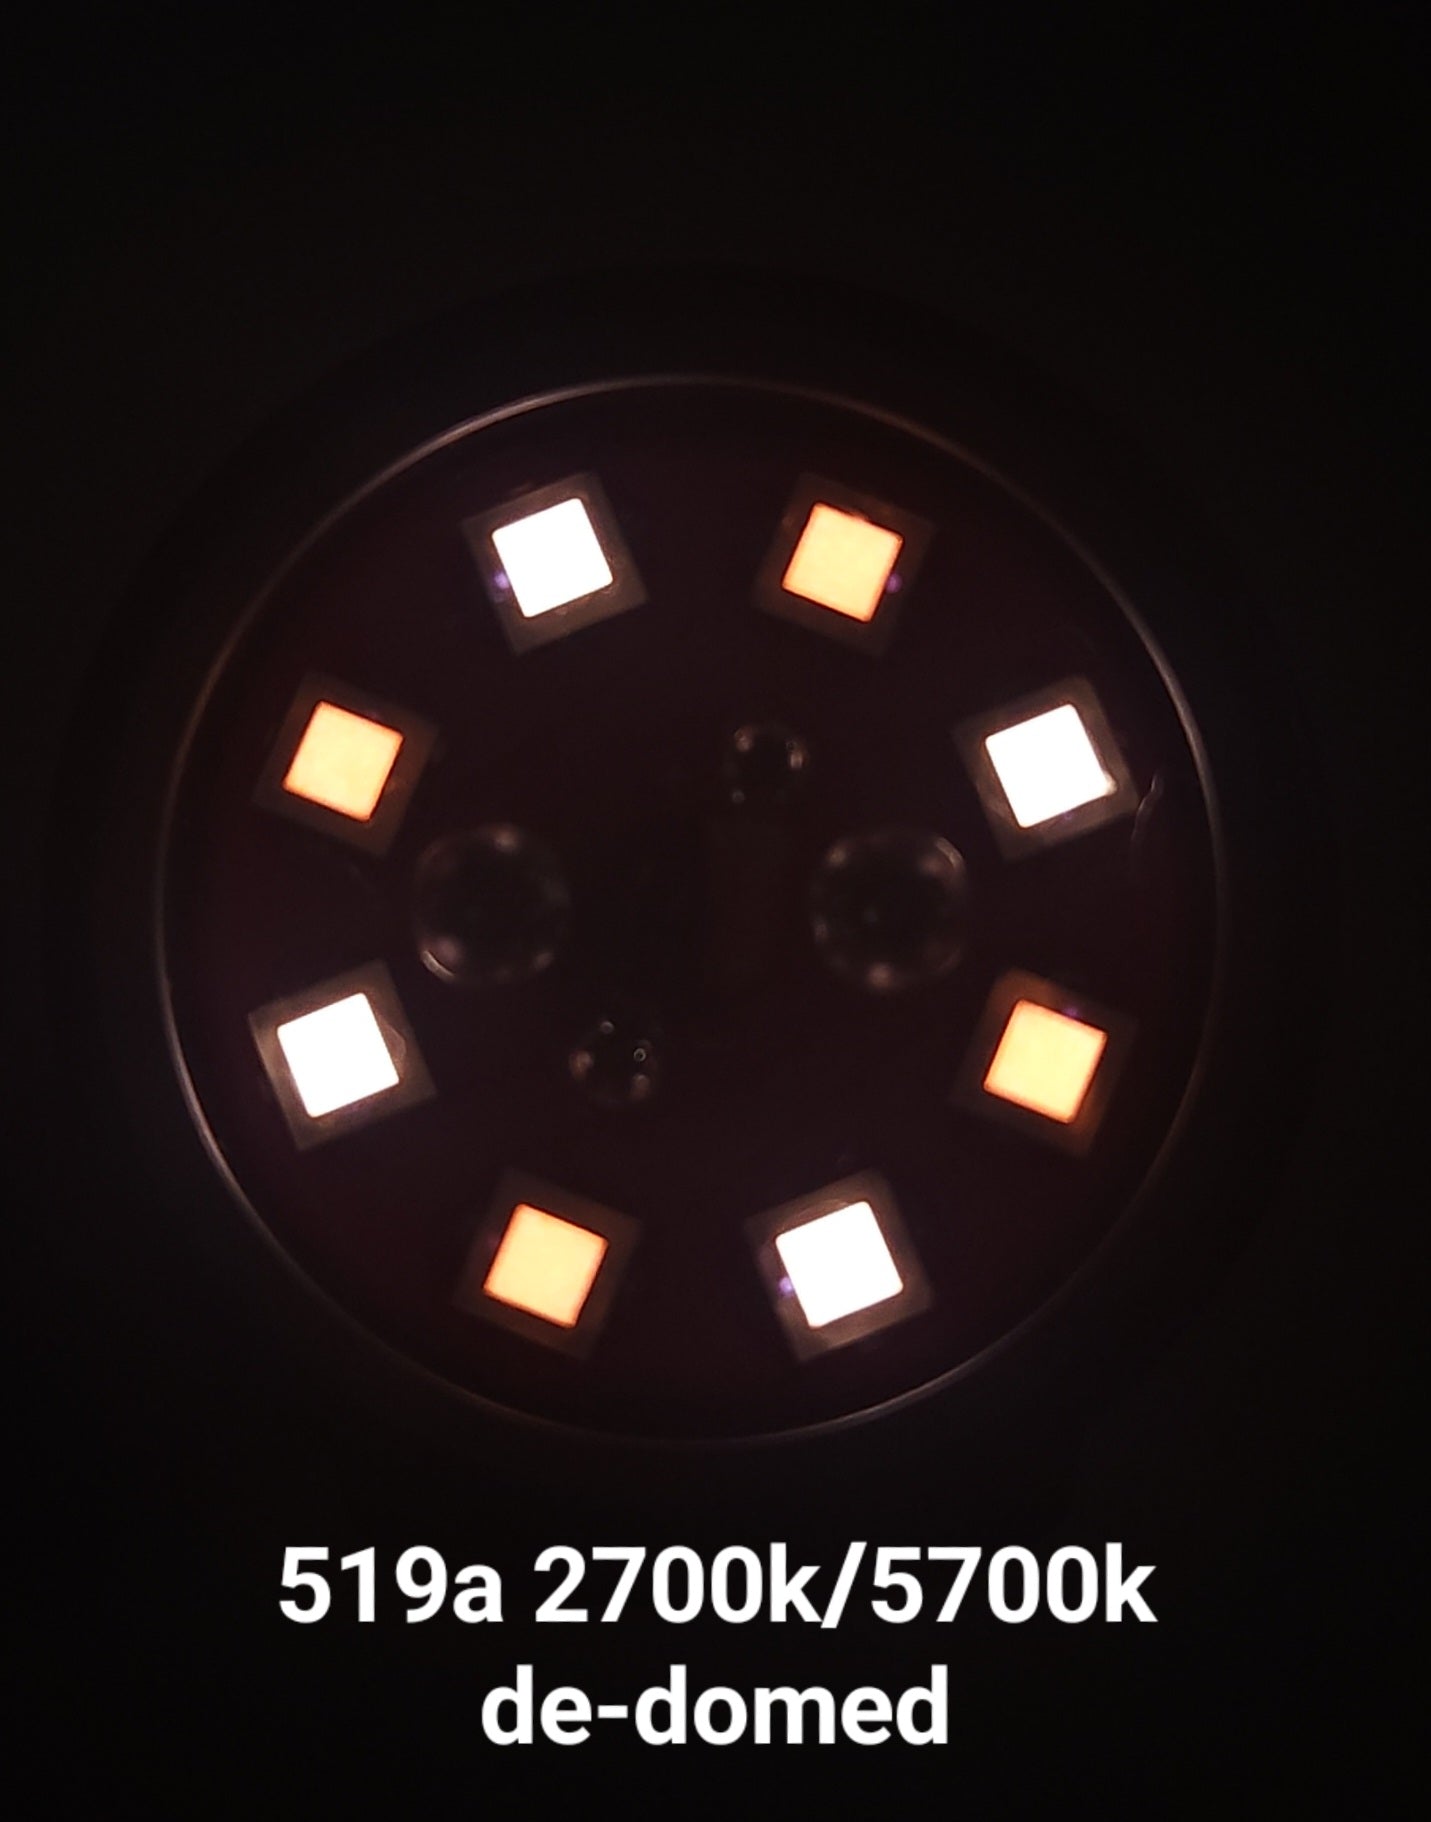 Emisar D4K Copper 8 X Mule 21700 High Power LED Flashlight "CUSTOM BUILT-TO-ORDER"